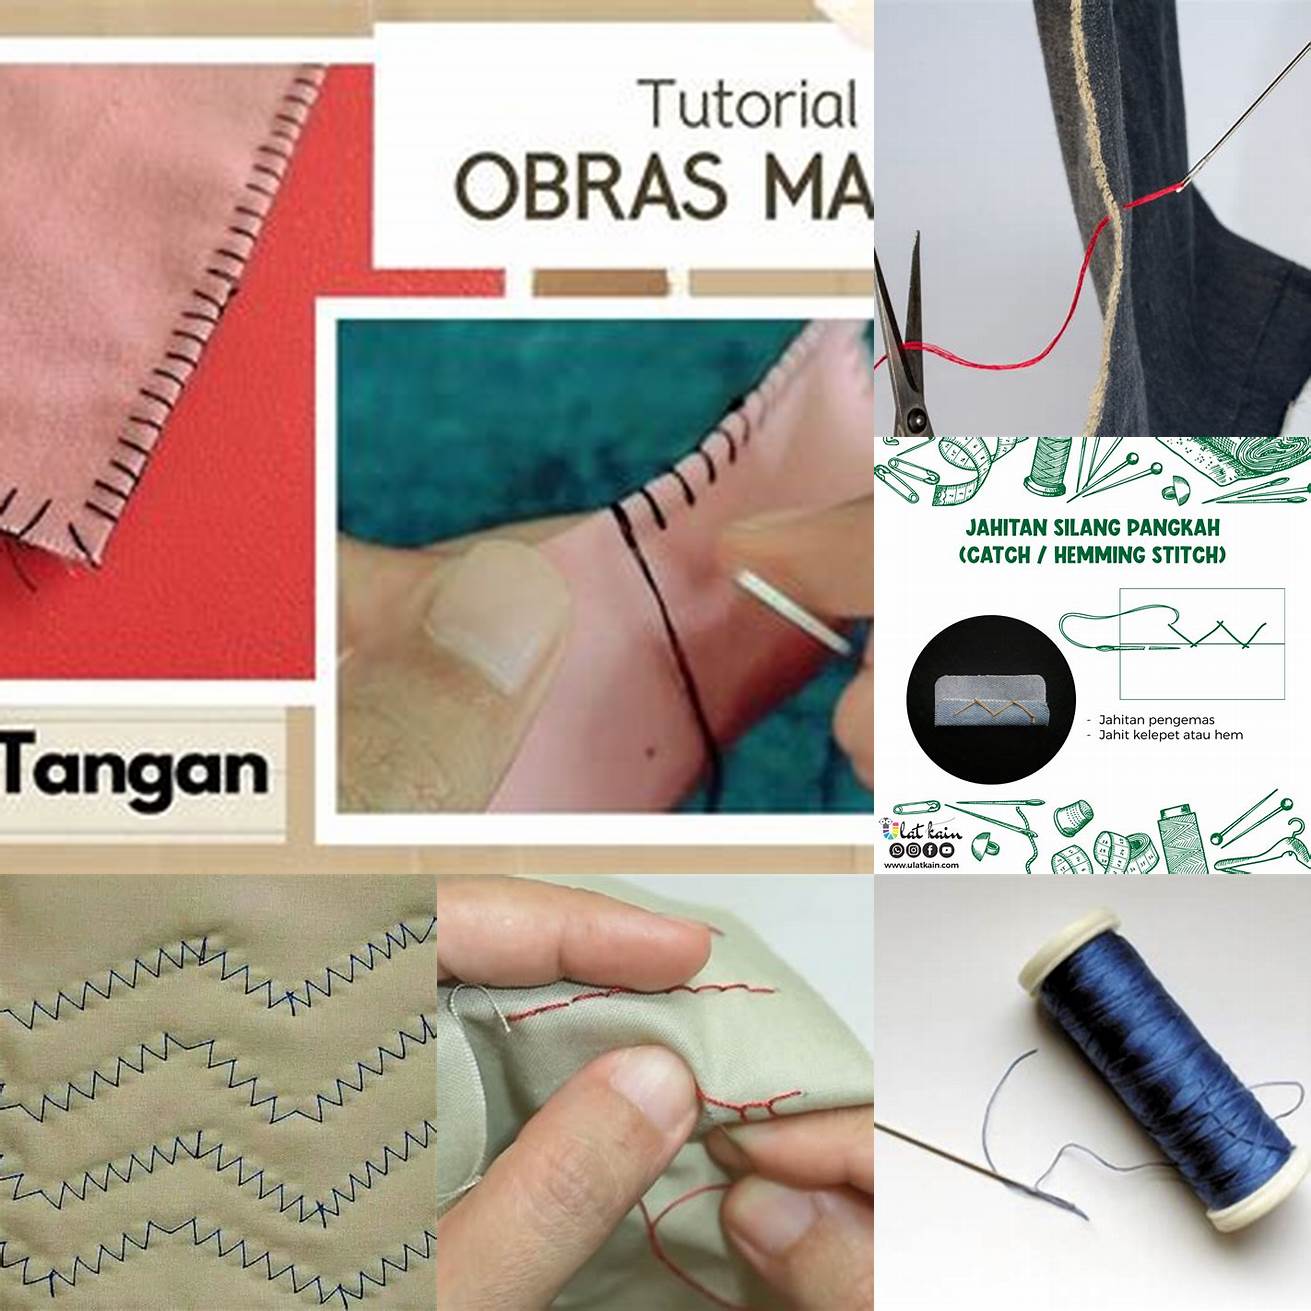 Jahit kedua kain dengan benang dan jarum Anda bisa menggunakan pola jahitan yang simpel seperti jahitan lurus atau jahitan zigzag